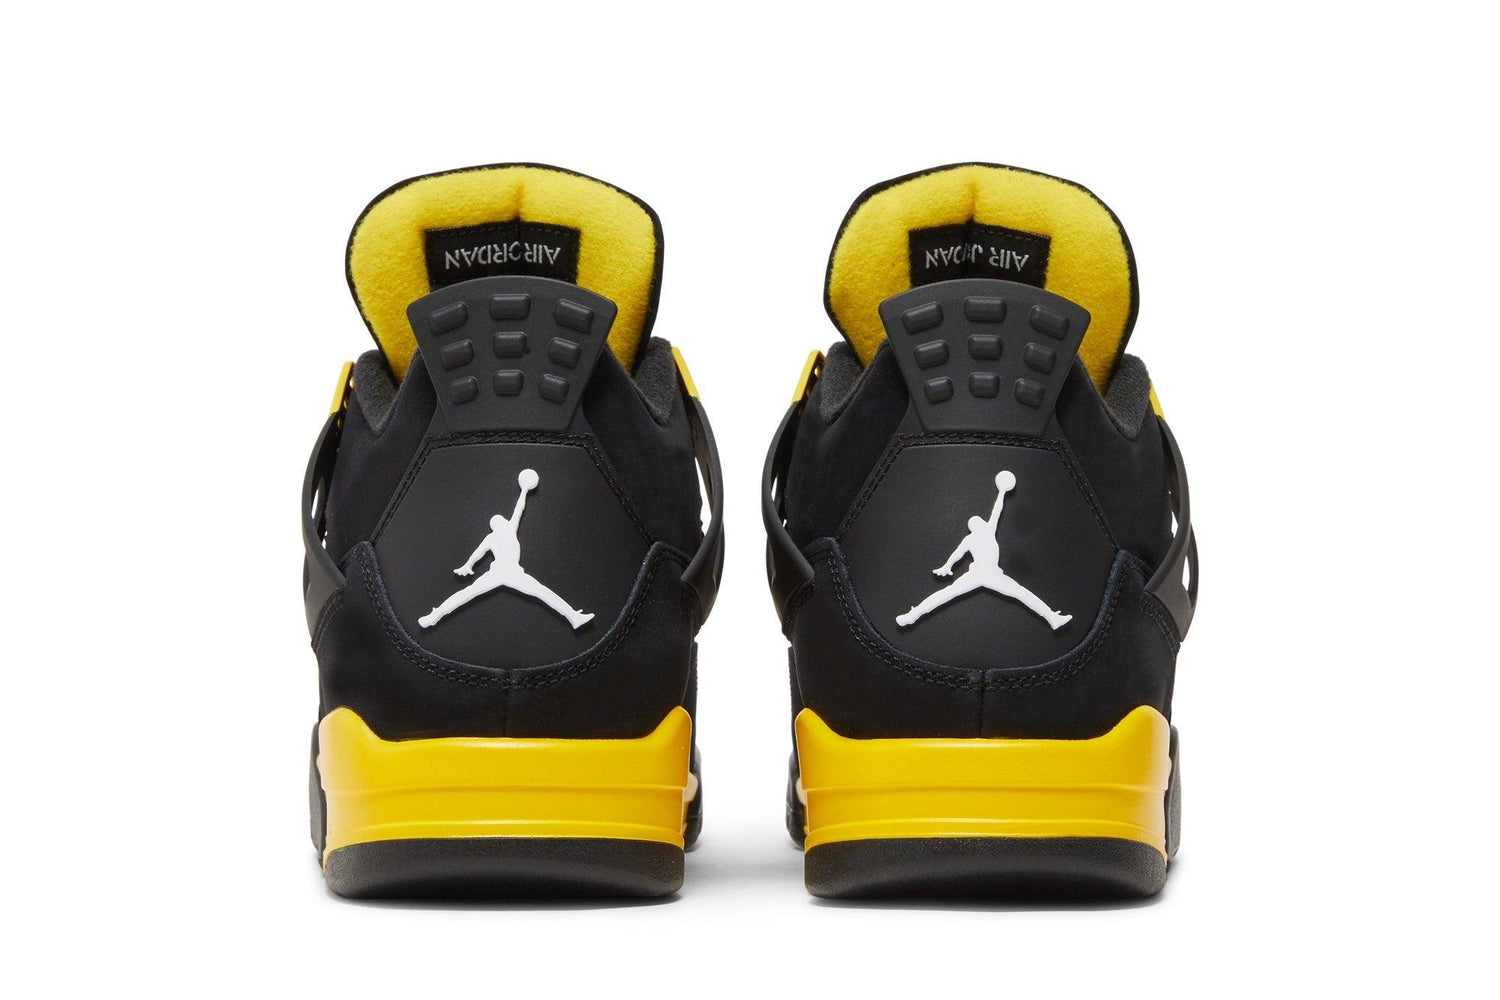 Tênis Air Jordan 4 Thunder Preto/Amarelo - LK Sneakers